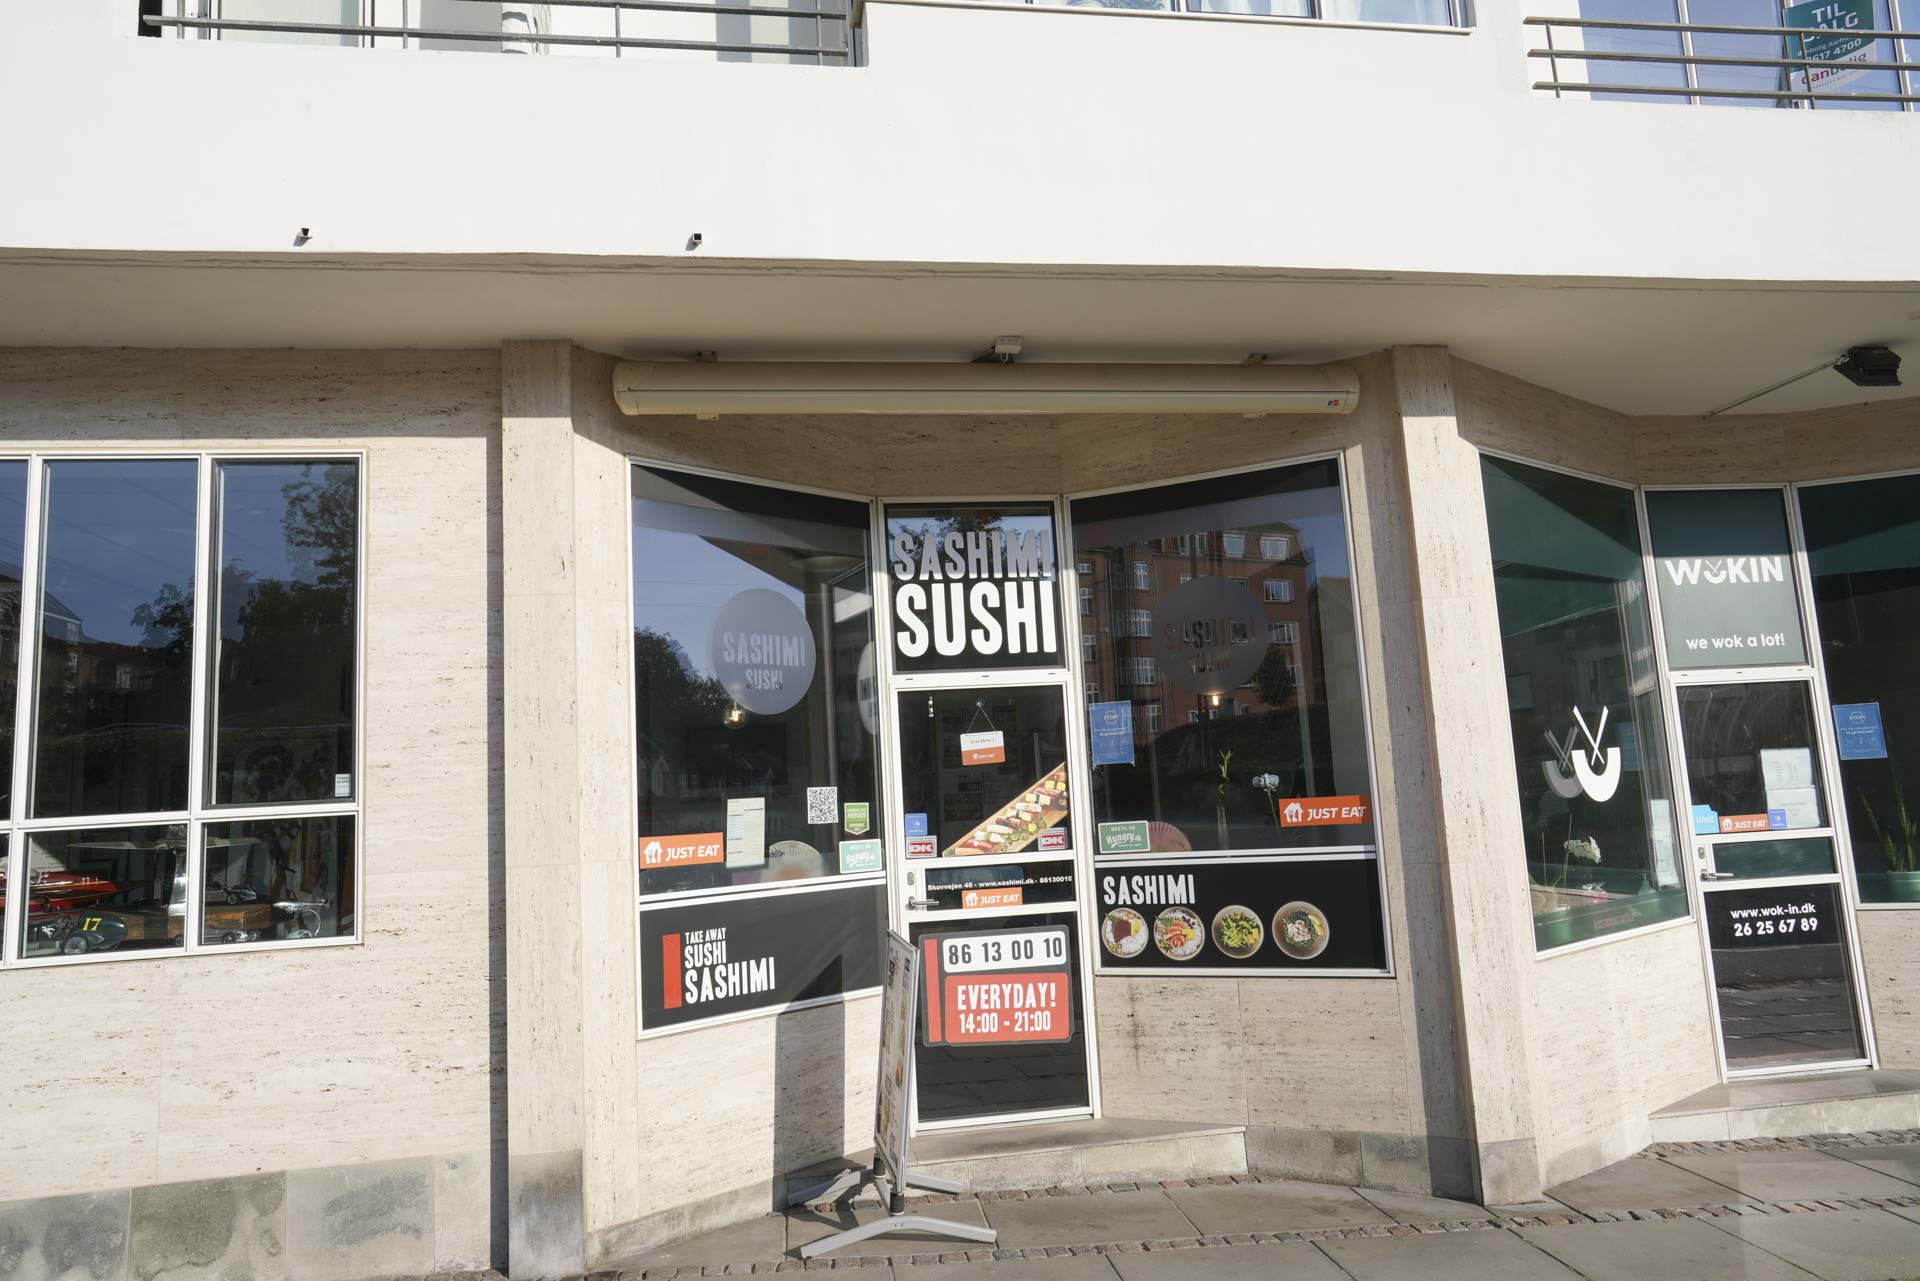 Sashimi sushi og wok in på Trøjborg